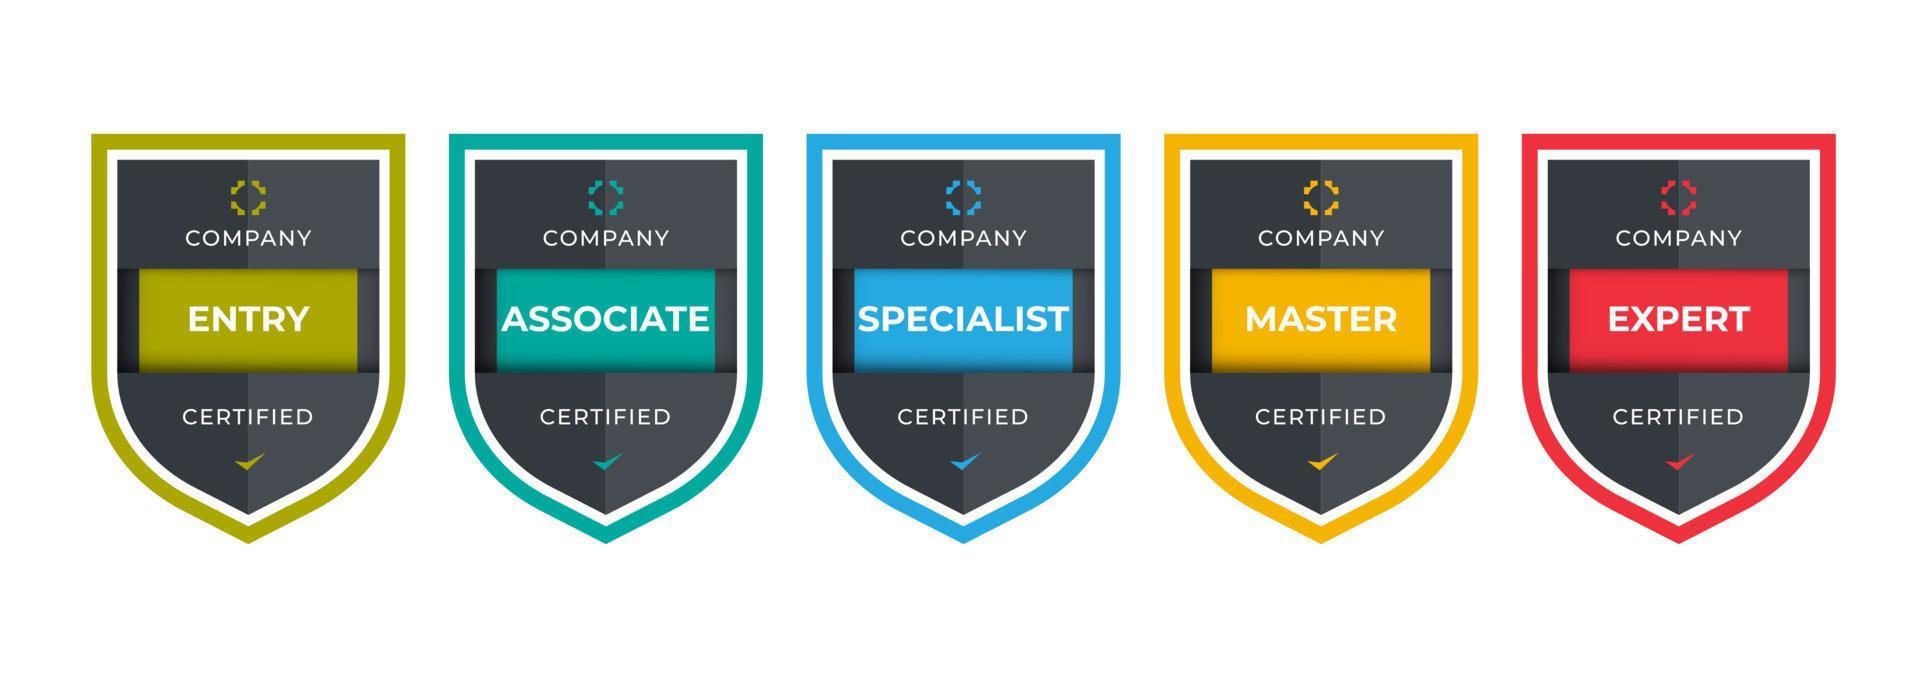 design del logo con badge certificato per badge di formazione aziendale. certificati da determinare in base a criteri. illustrazione vettoriale moderno colorato standard verificato.